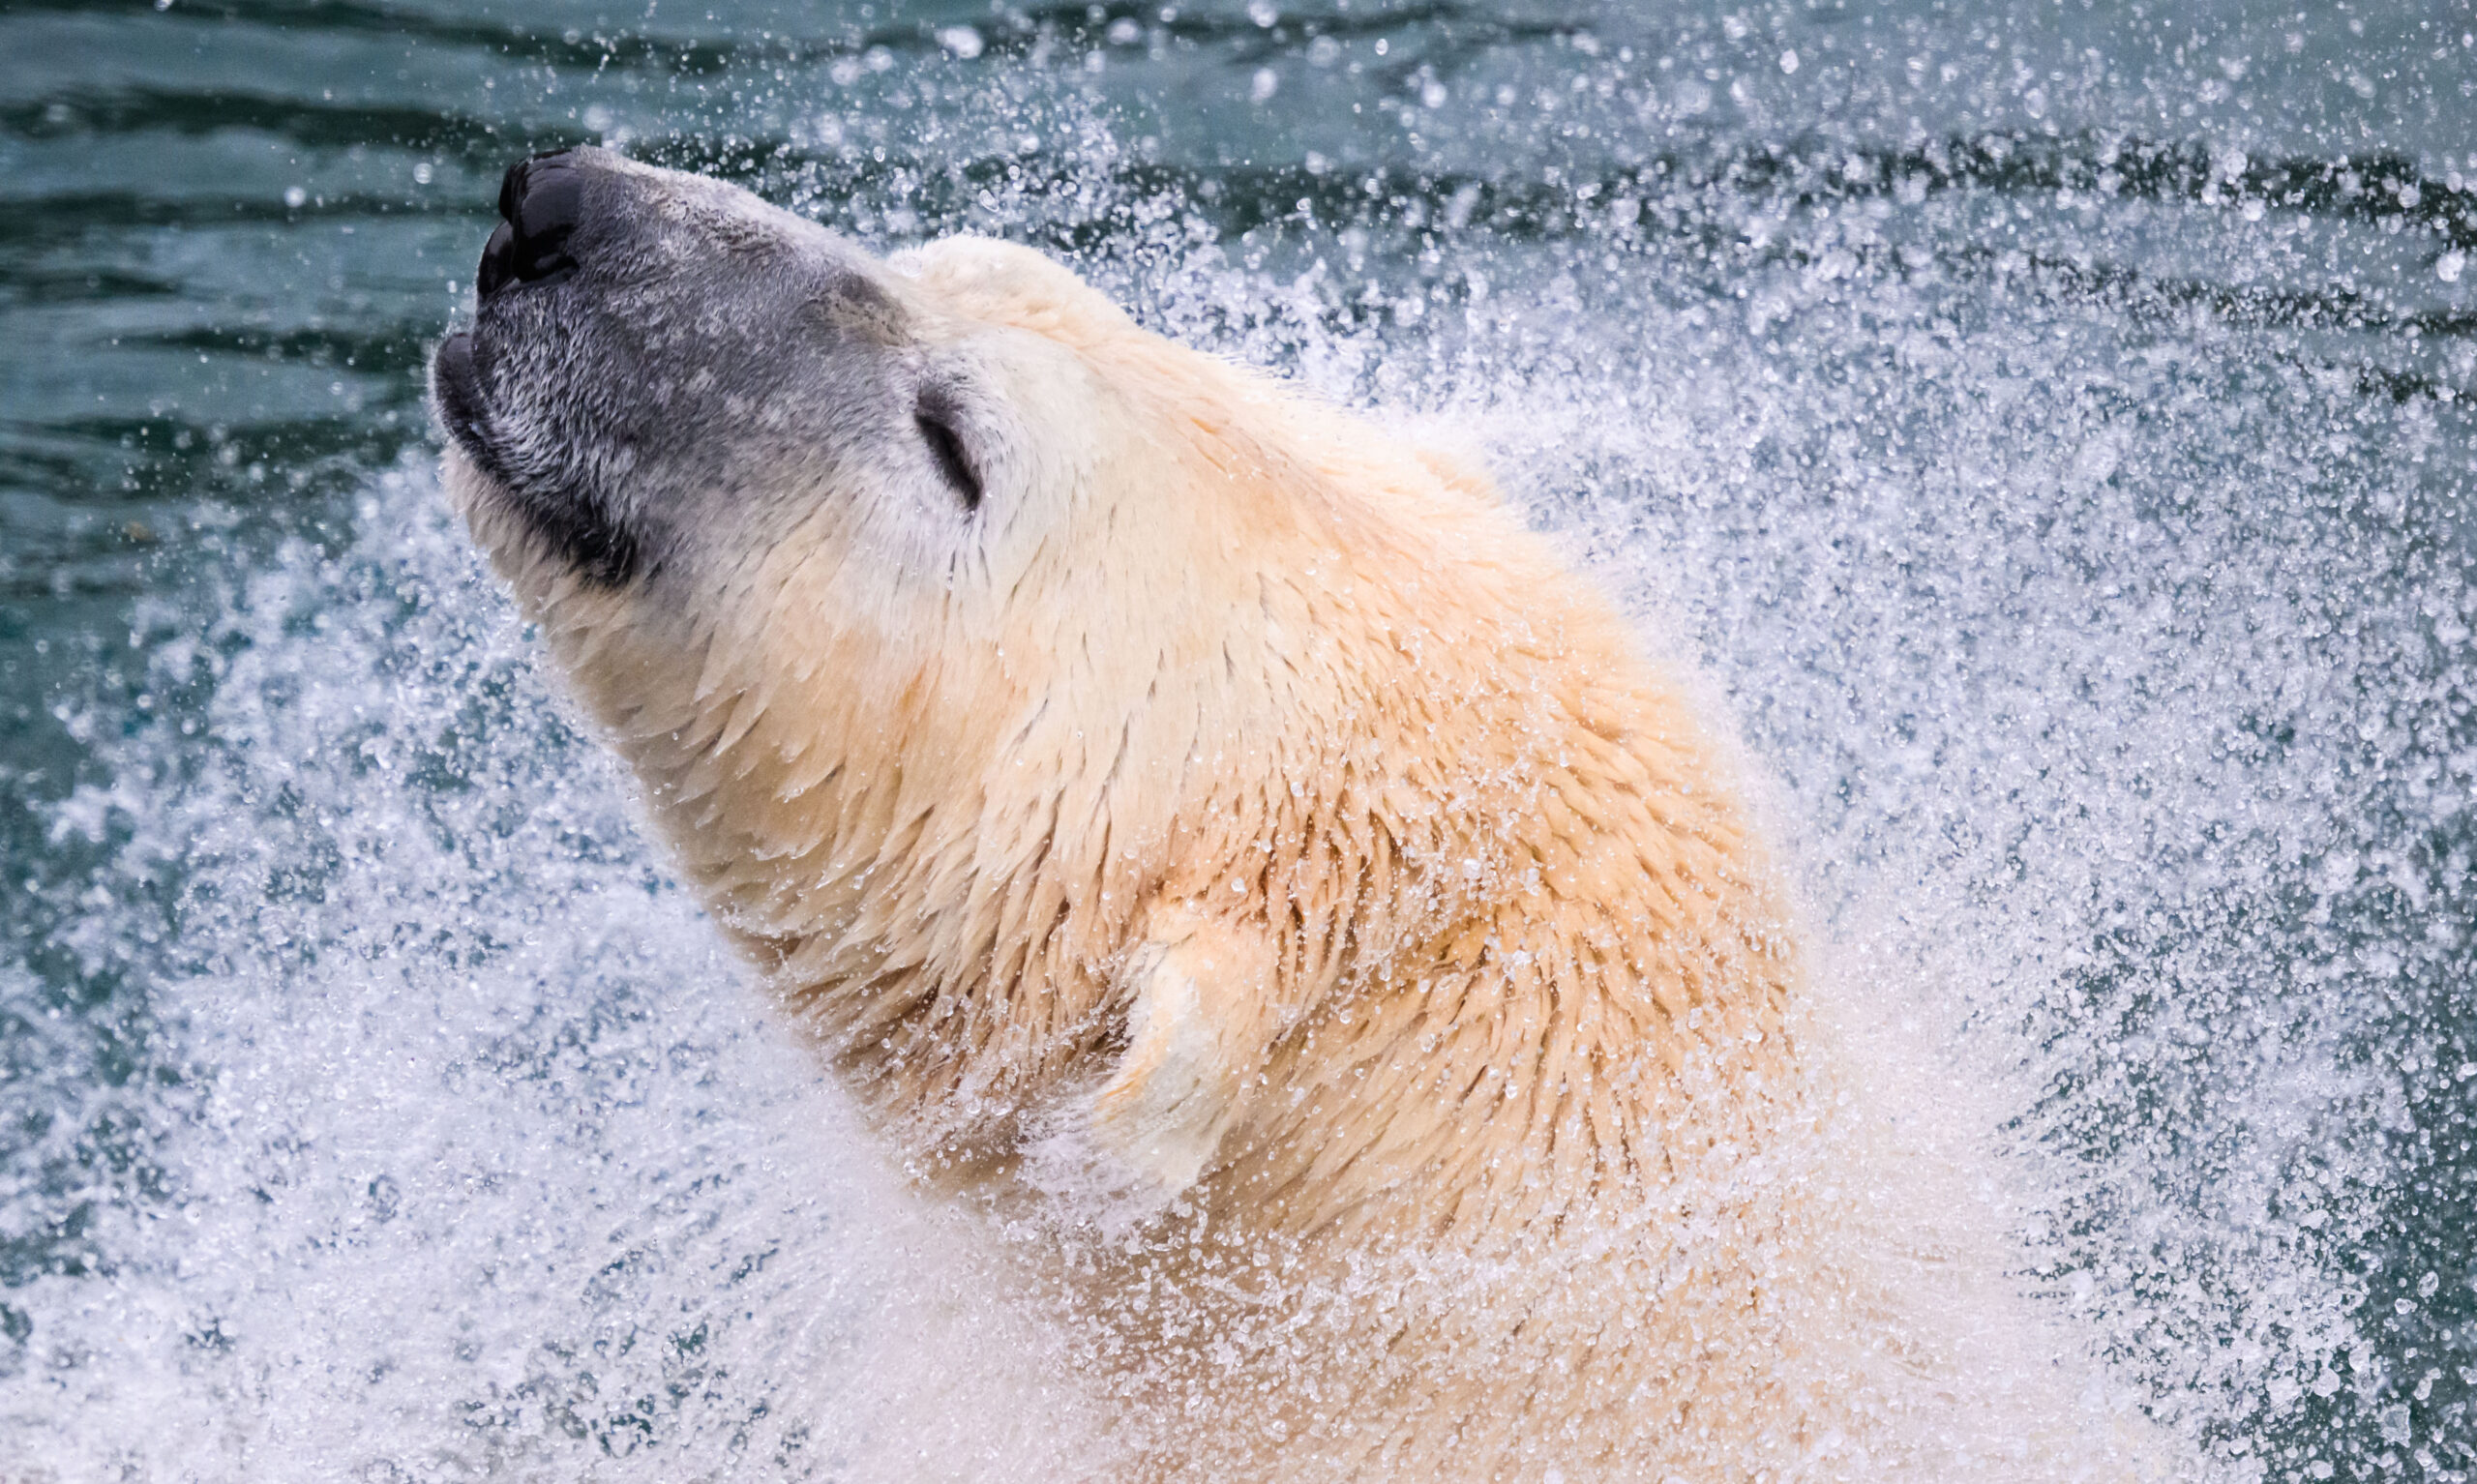 Ein Eisbär schüttelt im Zoo Hannover Wasser aus seinem Fell. (Archivbild)